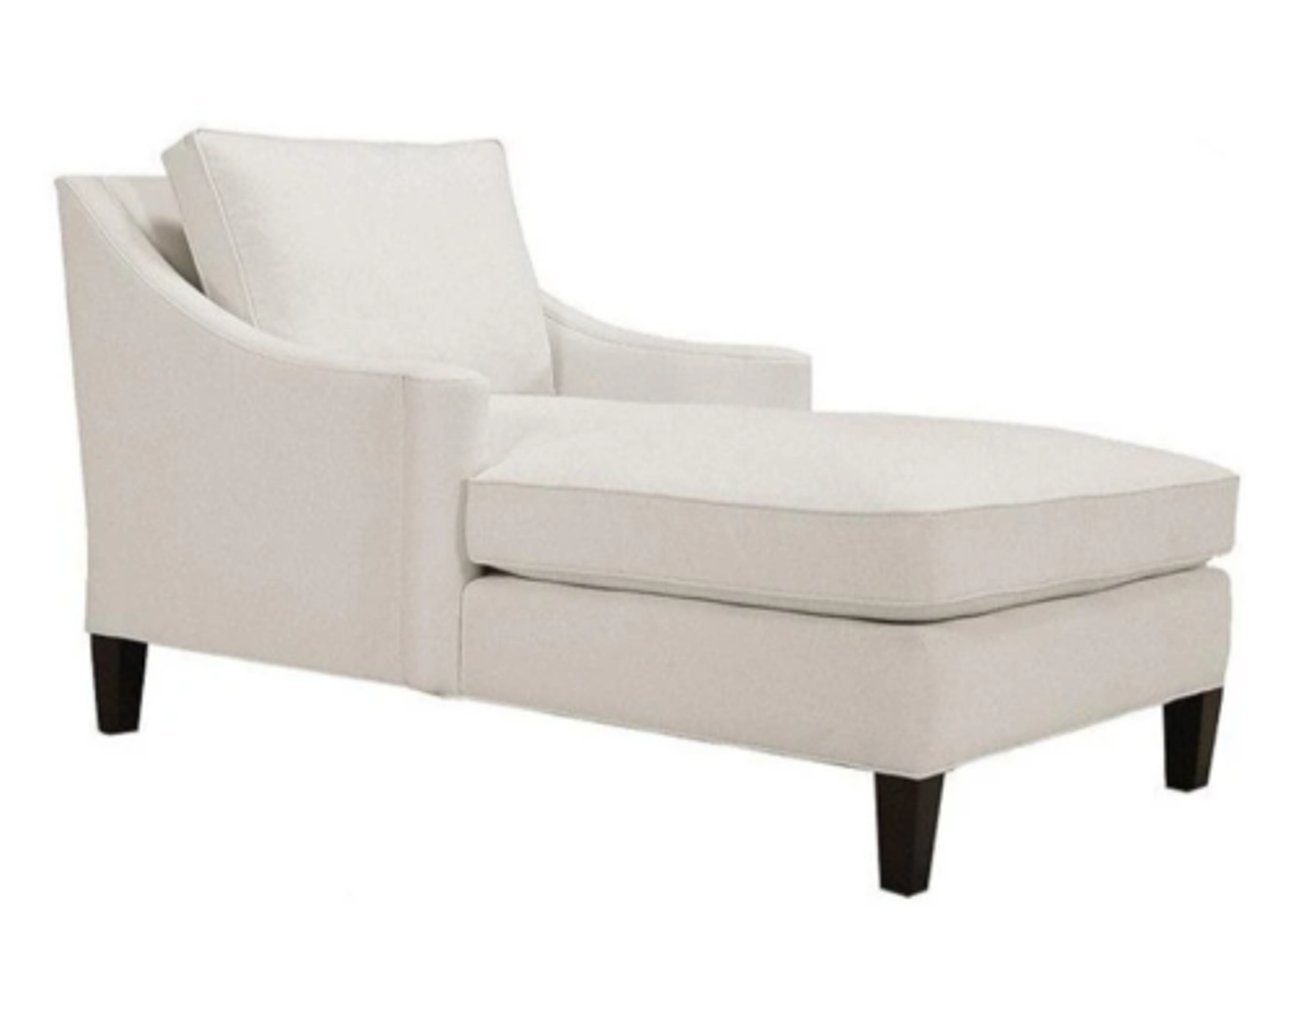 JVmoebel Chaiselongue Luxus Möbel Chaiselongue Wohnzimmer Neu Modern Design, Made in Europe Weiß